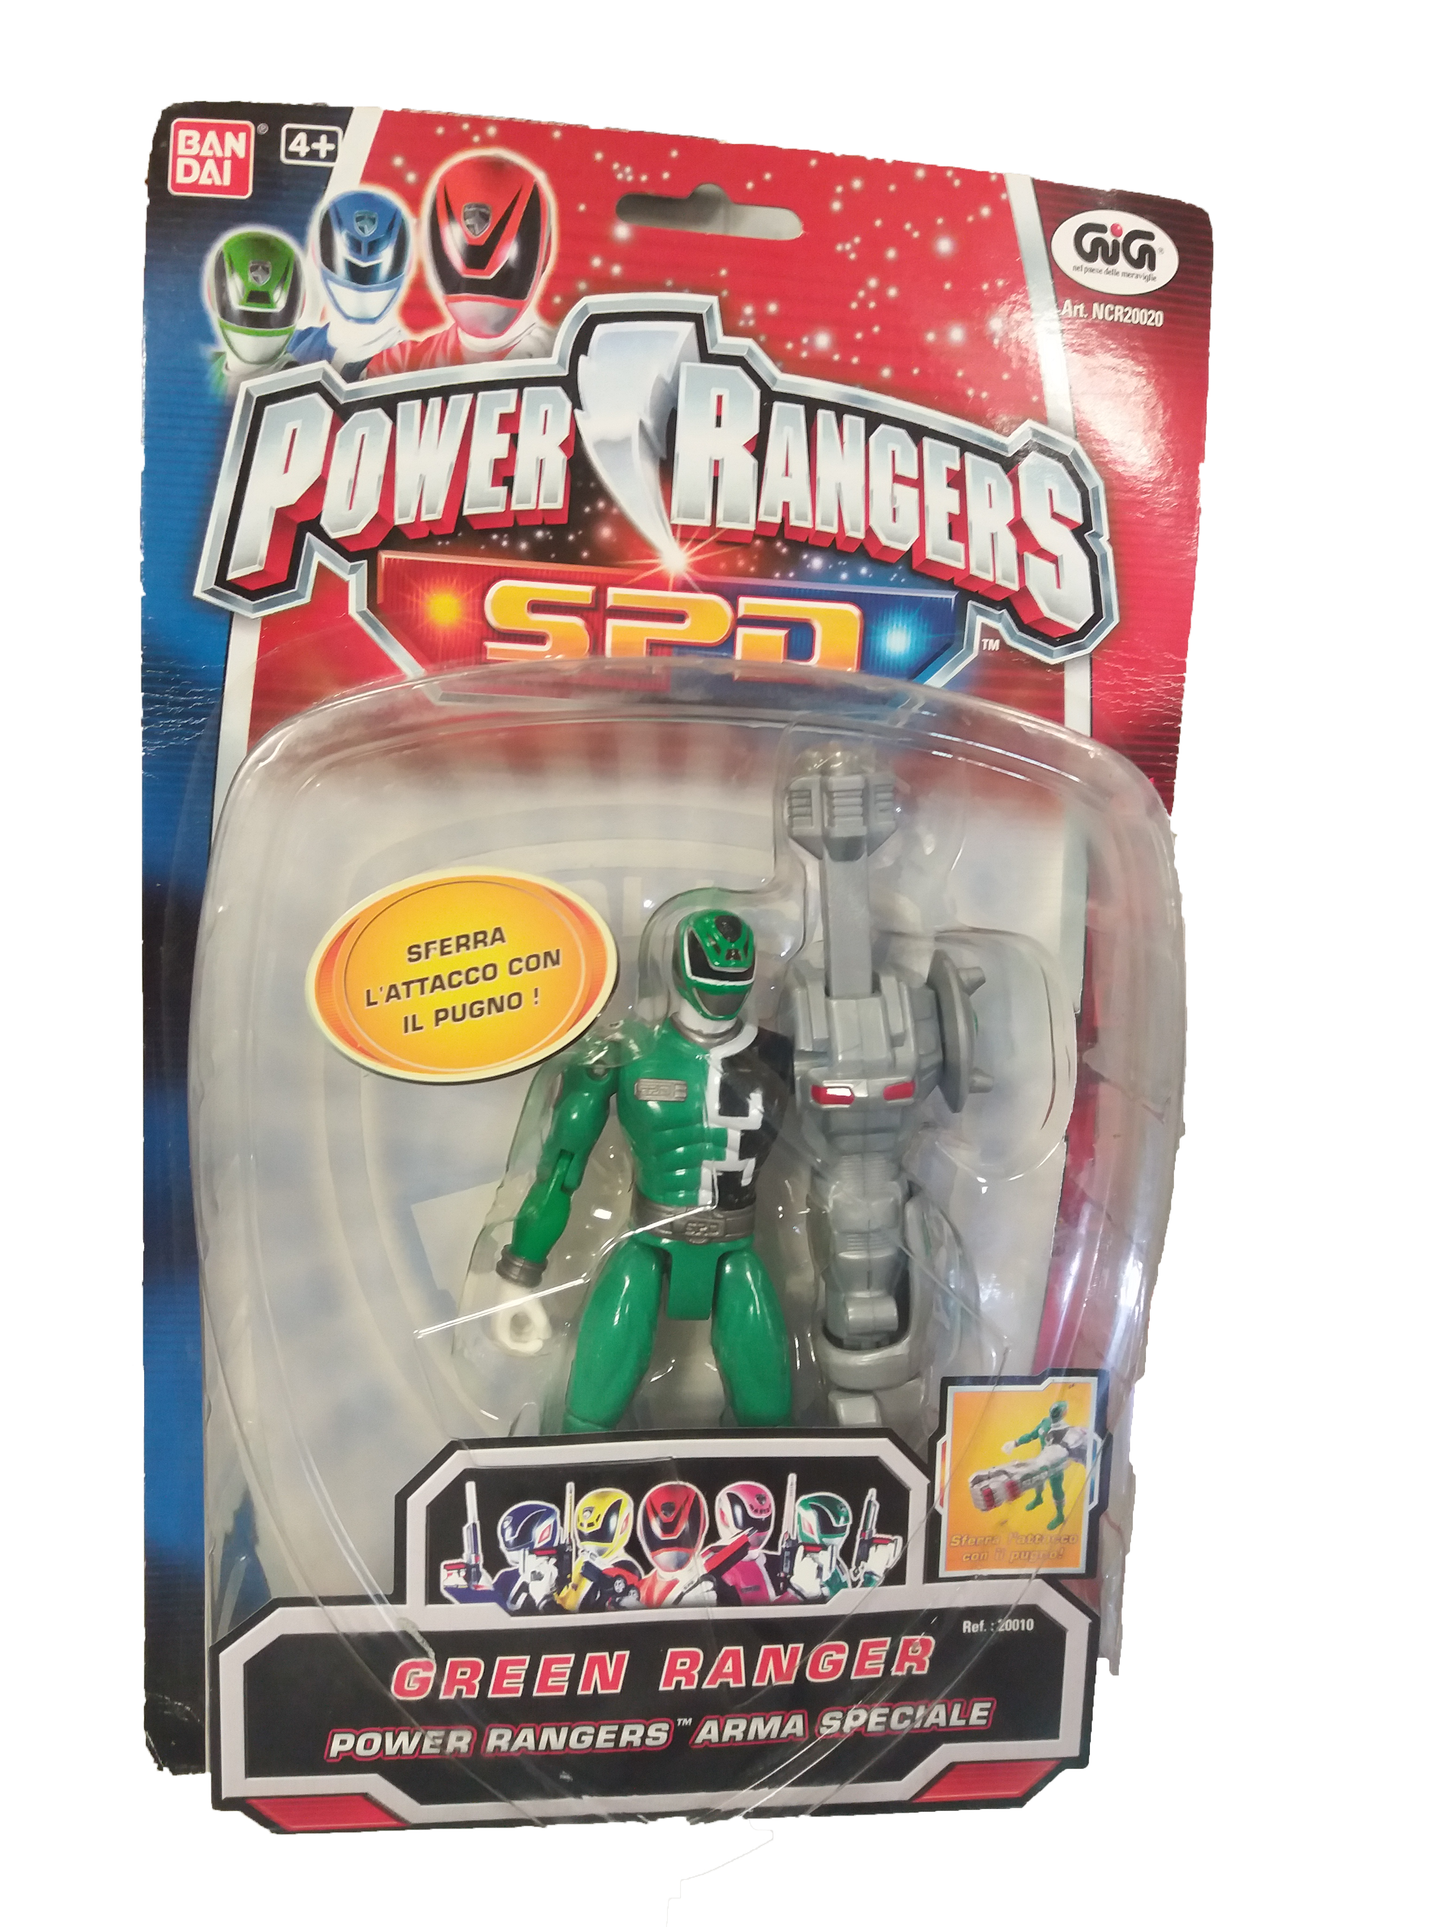 Power Rangers Ranger